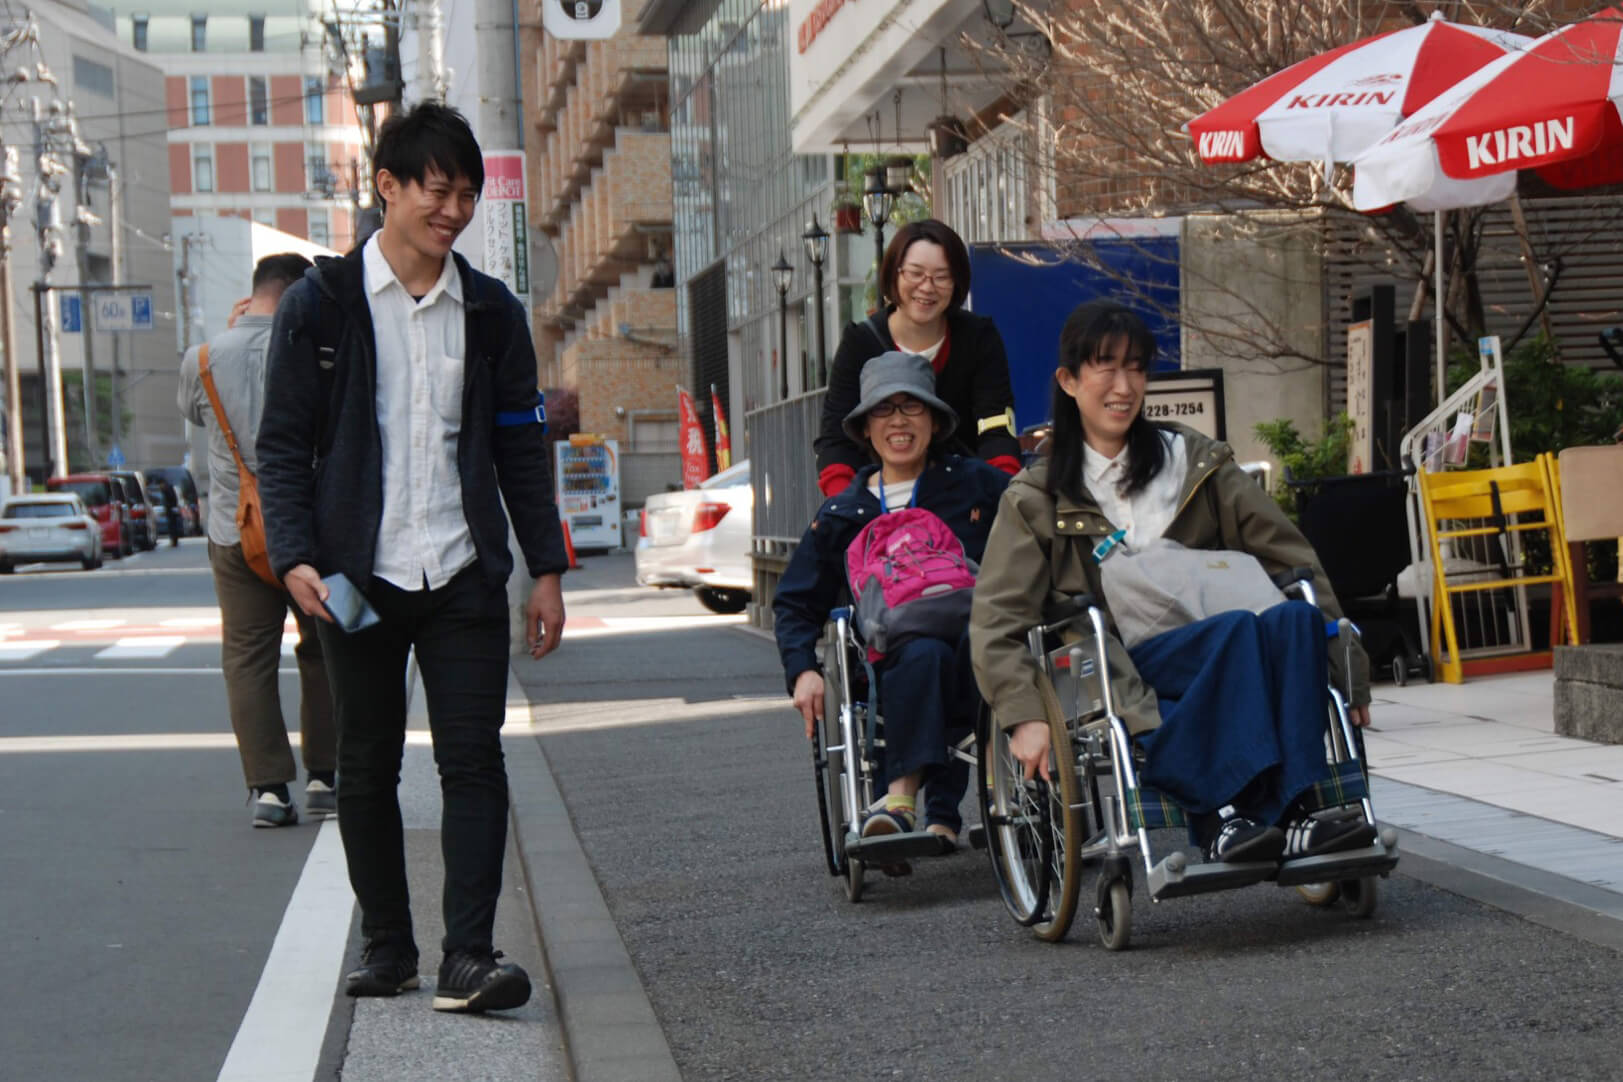 車椅子体験をしている様子を写した写真です。車椅子に乗った2名の女性と車椅子を押す1名の女性、車椅子の横を歩く1名の男性が笑顔でまちの歩道を進んでいます